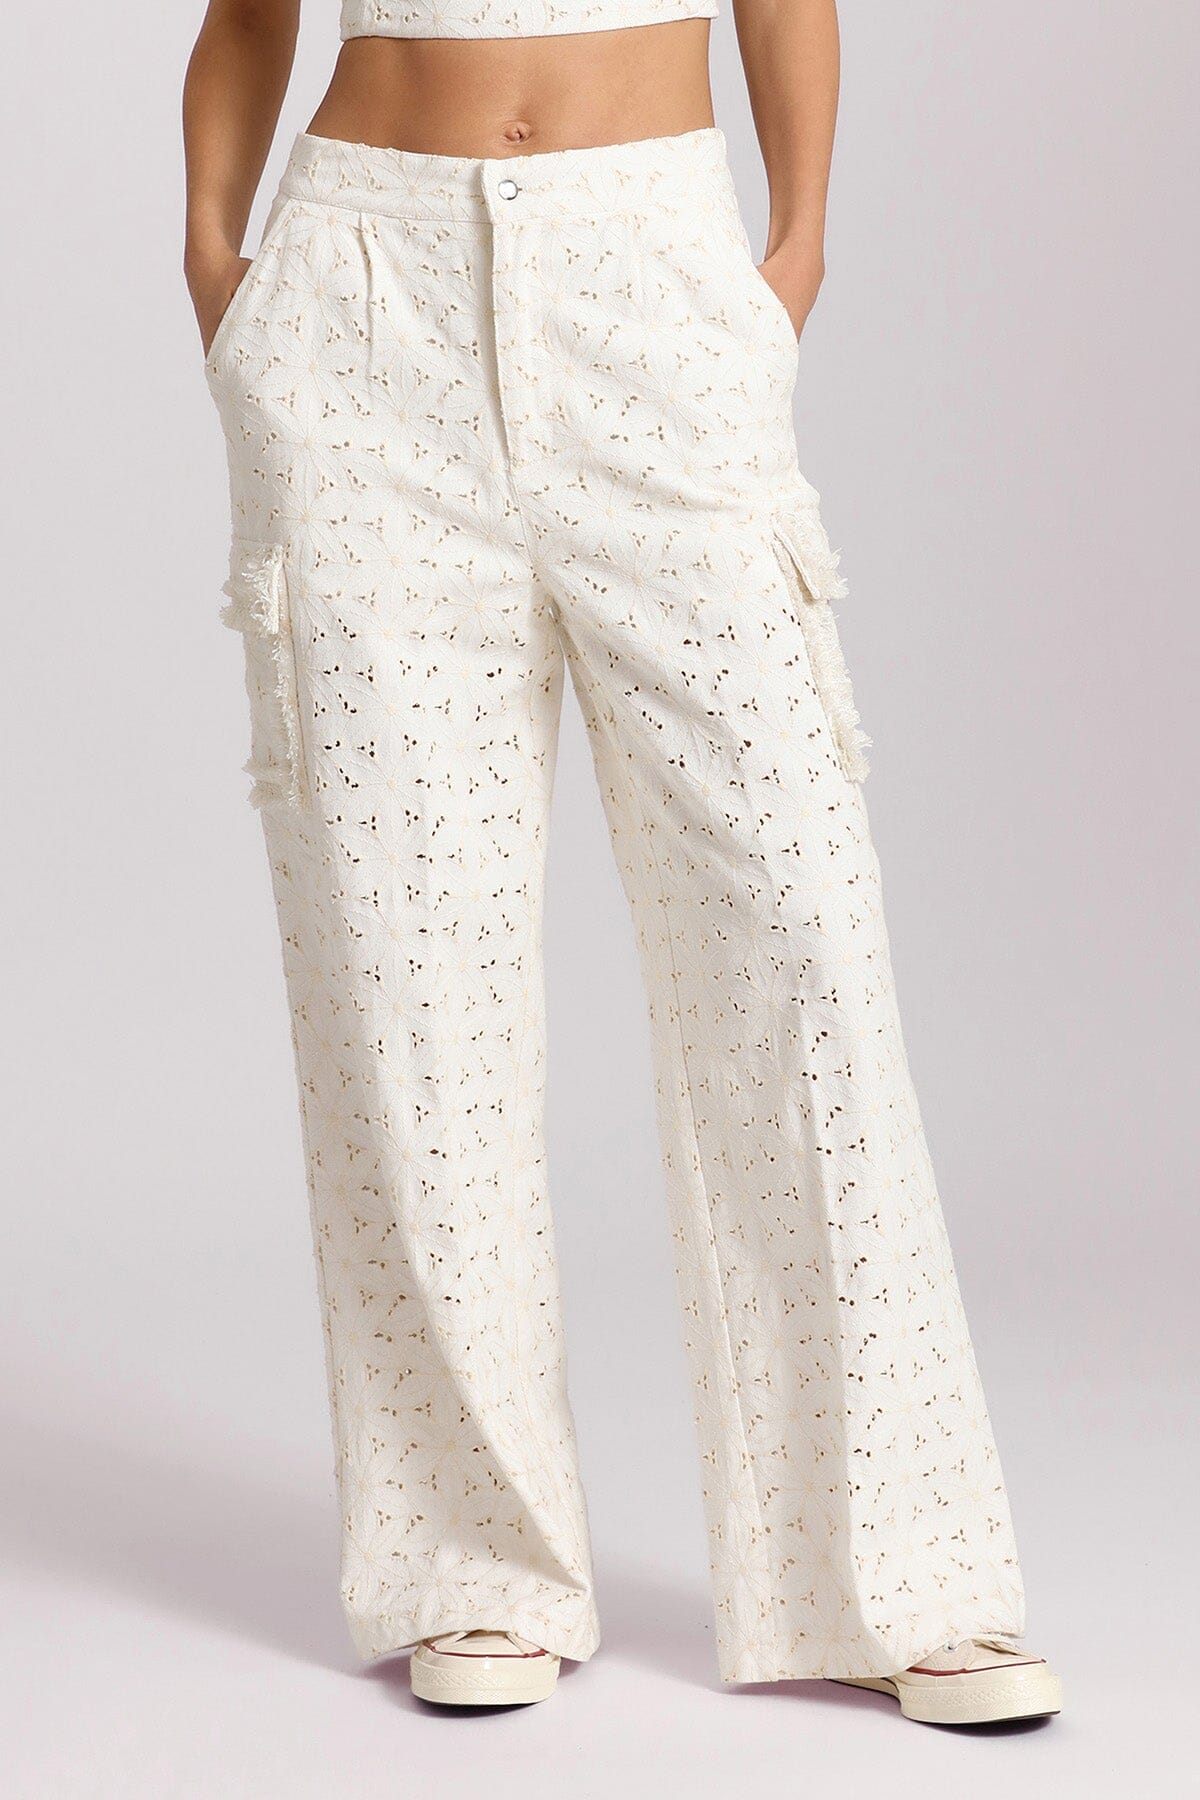 Embroidered Cotton Wide Leg Cargo Pant Pants Avec Les Filles White XS 